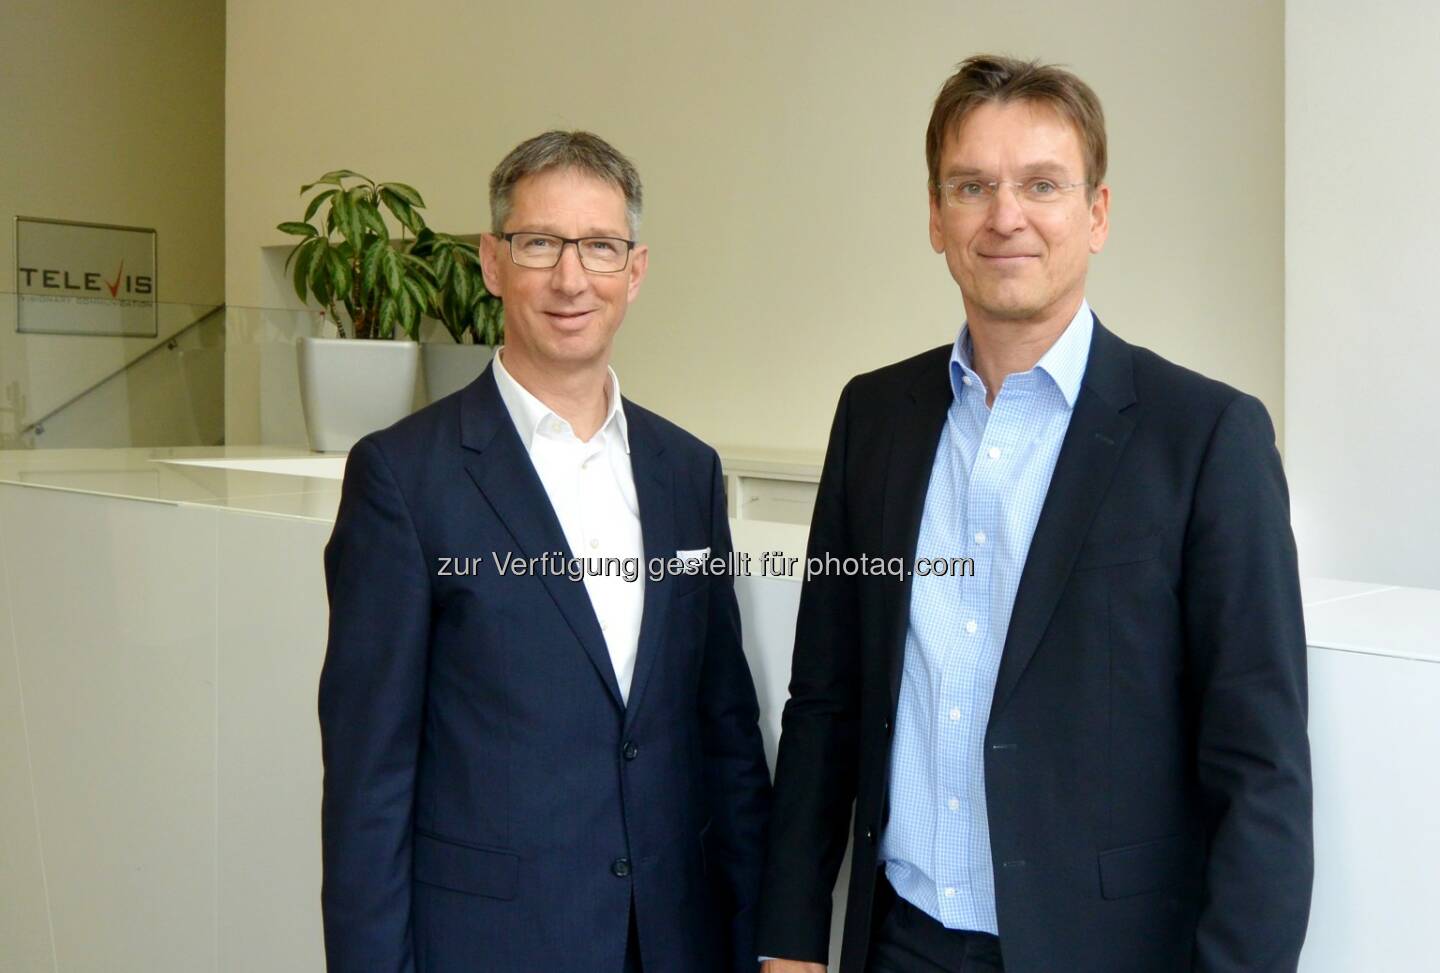 Hermann Graf und Peter Haas - T&N Telekom & Netzwerk GmbH: T&N übernimmt Televis (Fotocredit: T&N GmbH)